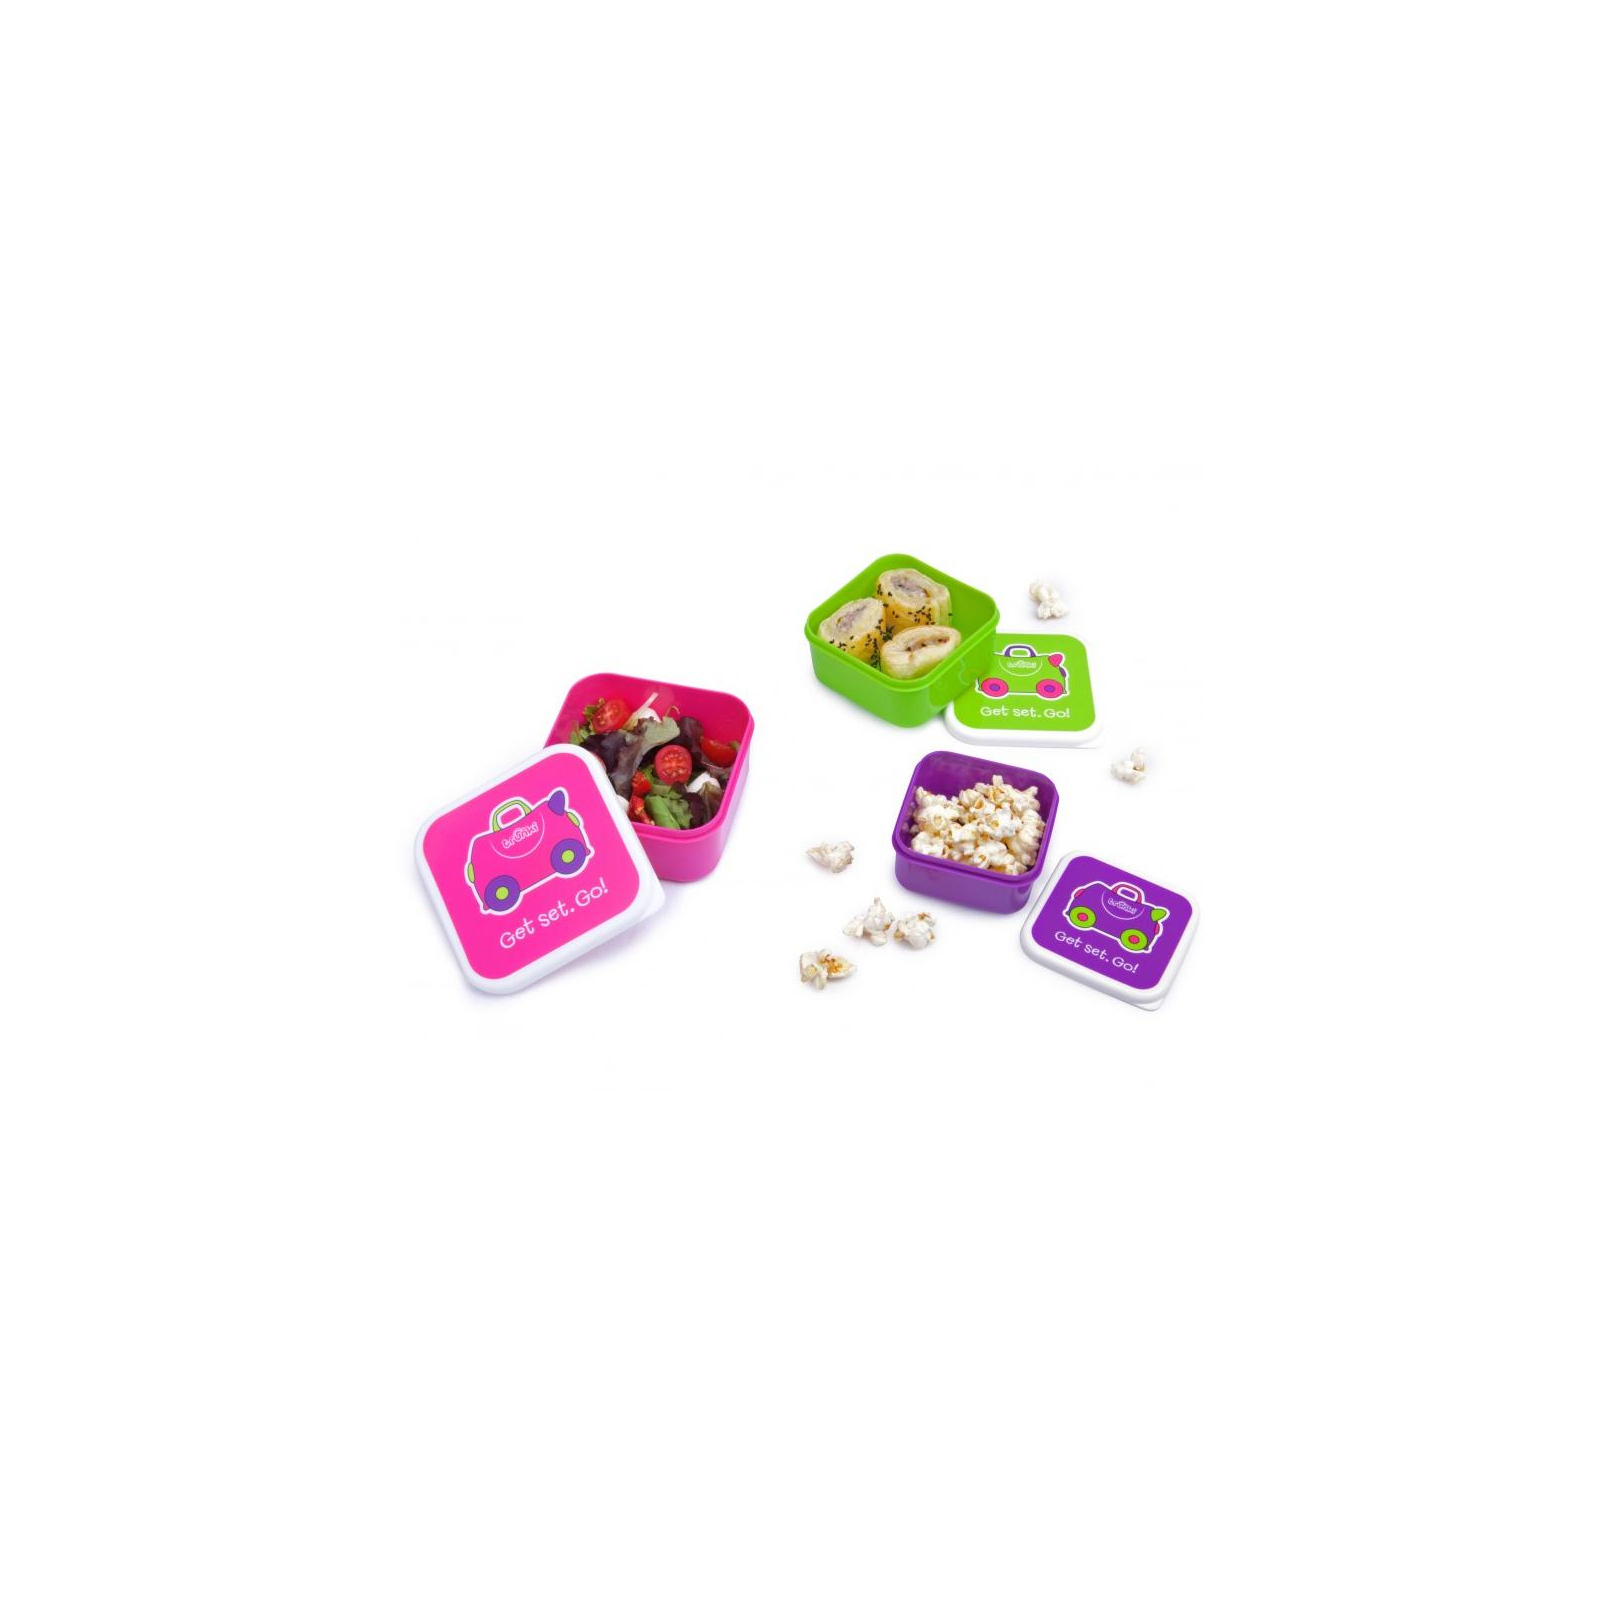 Контейнер для зберігання продуктів Trunki Набор (малиновый, салатовый, фиолетовый) (0300-GB01) зображення 6